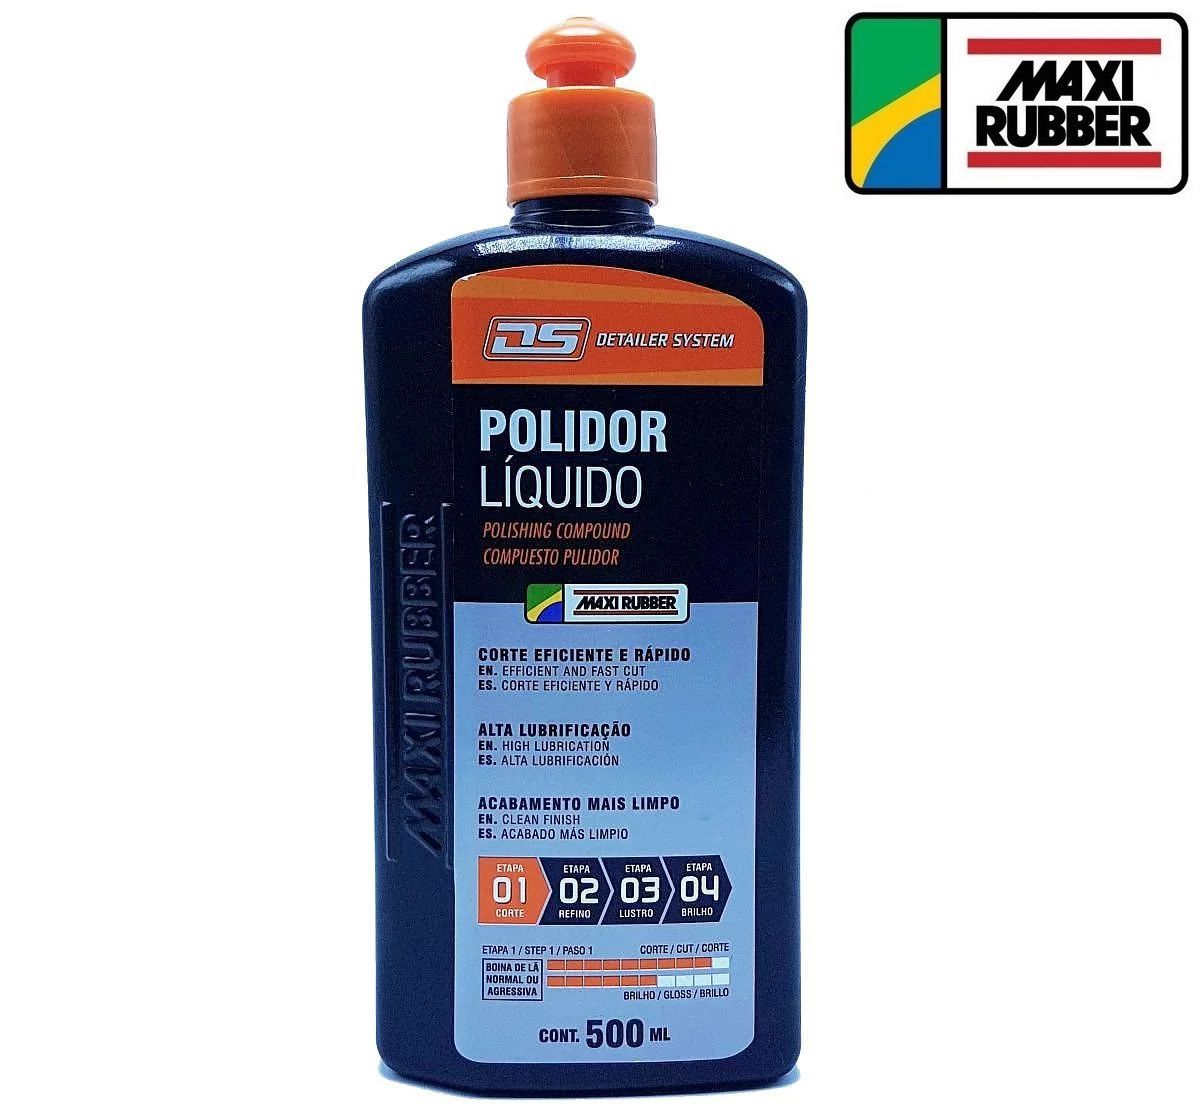 Composto Polidor Liquido Detailer System 500ml Maxi Rubber